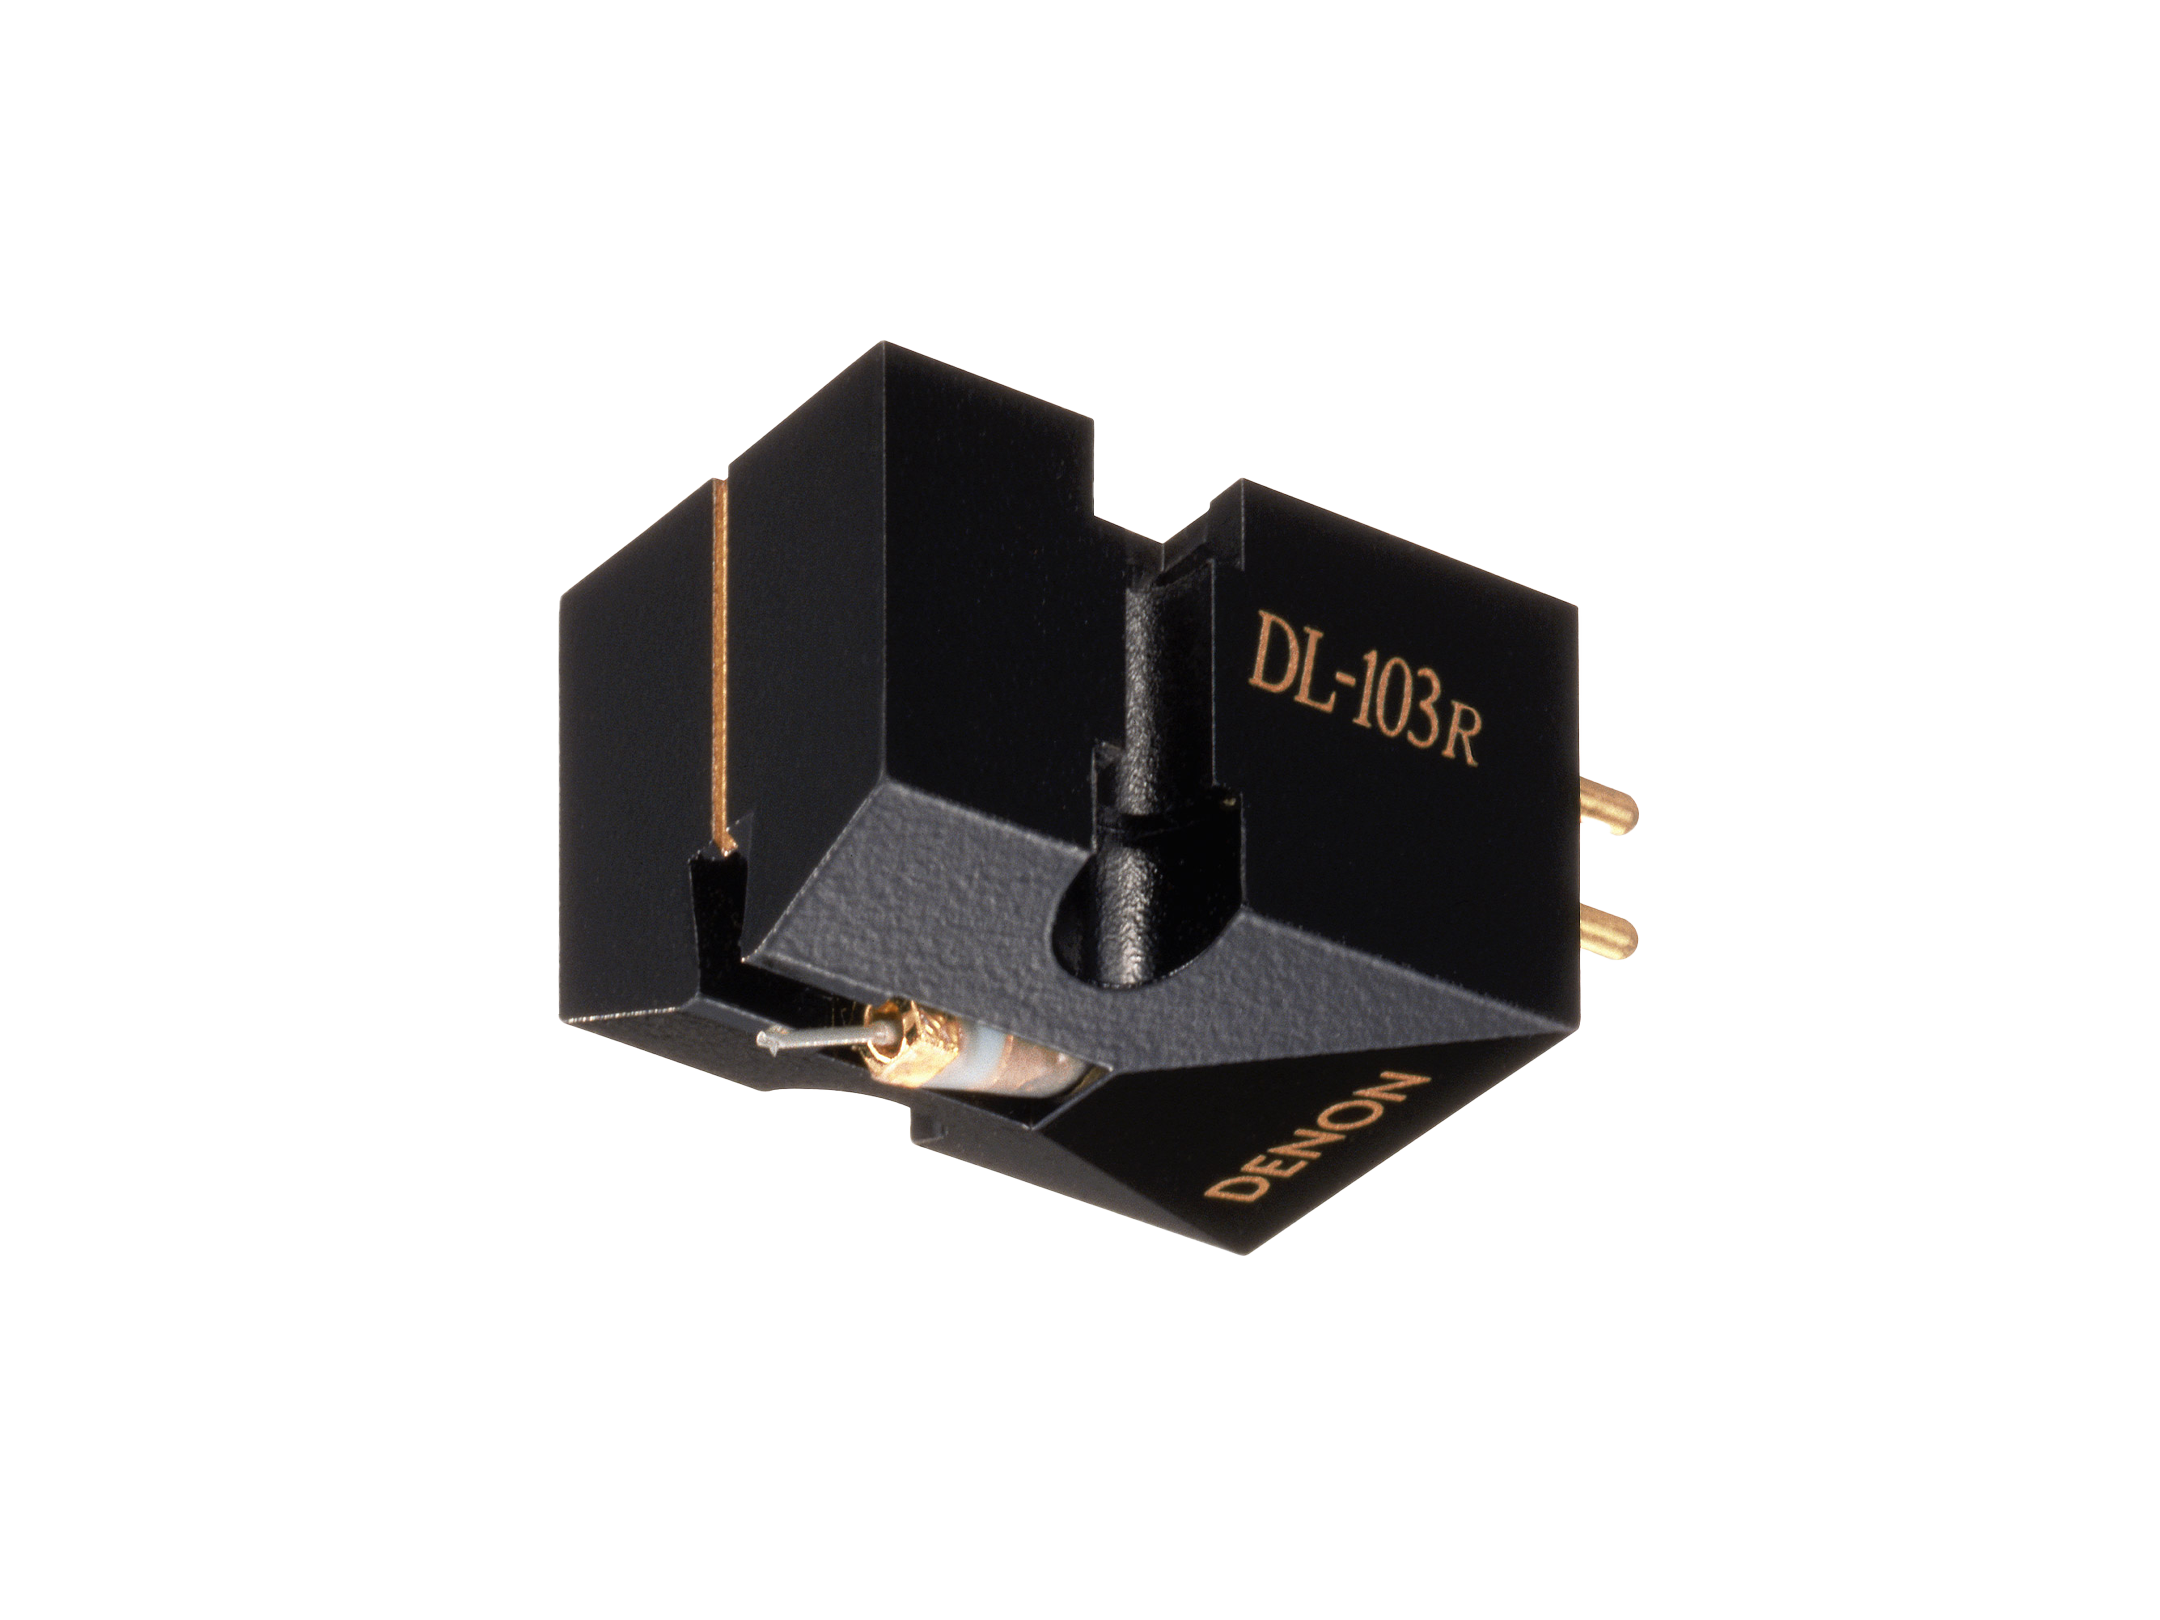 DL-103R - Flagship Moving Coil Phono Cartridge | Denon - Canada